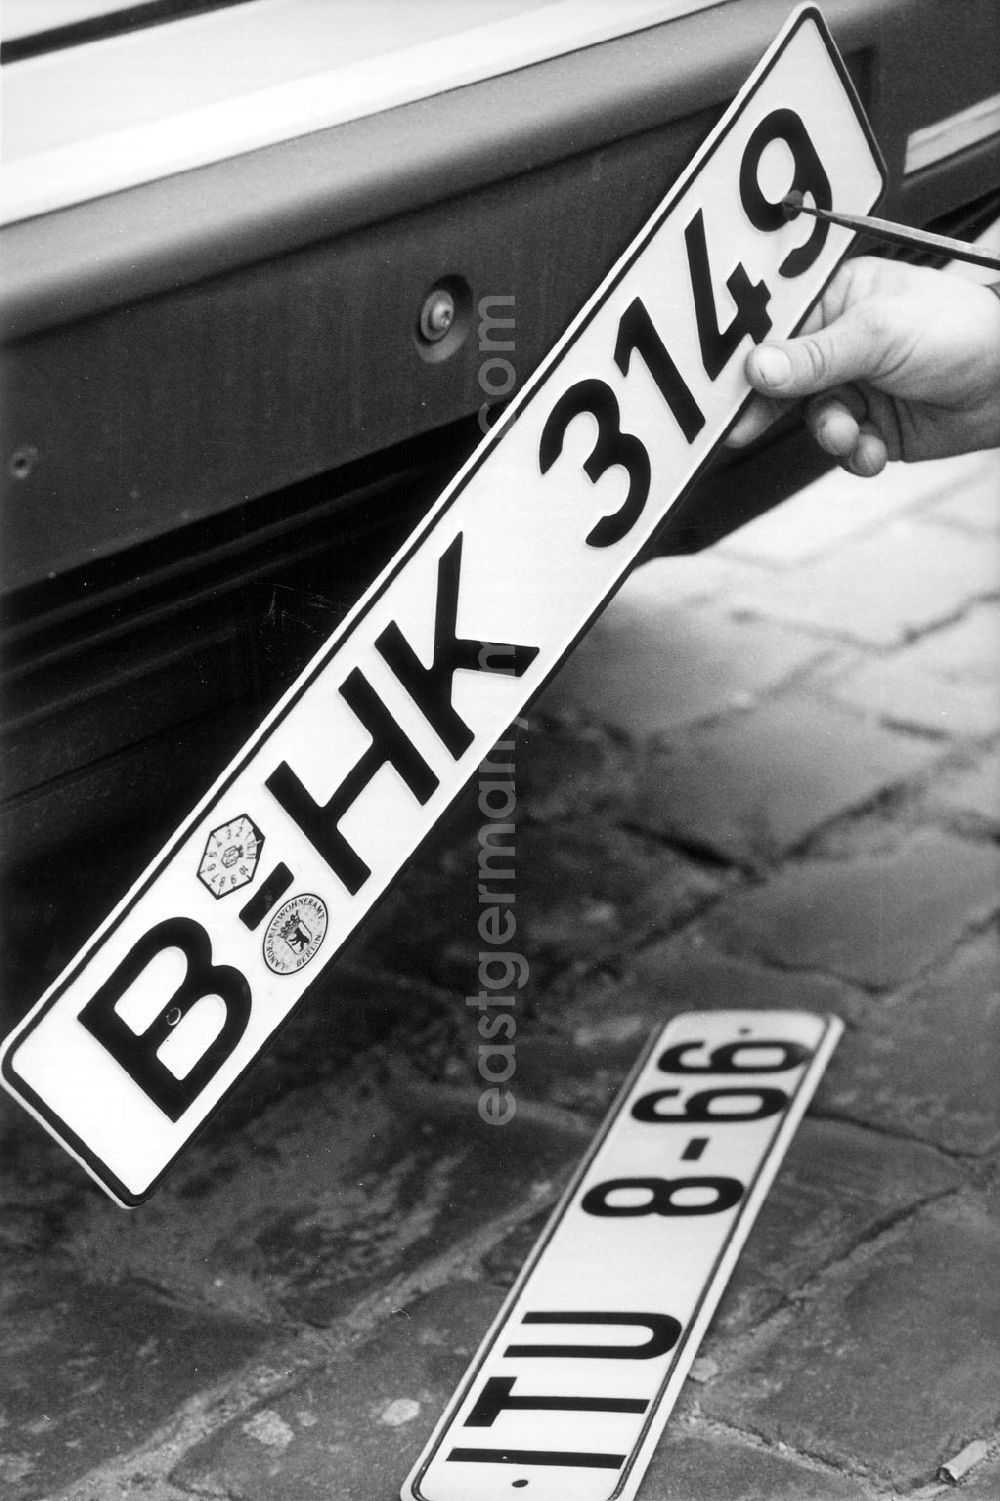 Berlin: Umstellung der Autokennzeichen, alle Berliner Autos fahren bald nur mit dem Kennzeichen B.